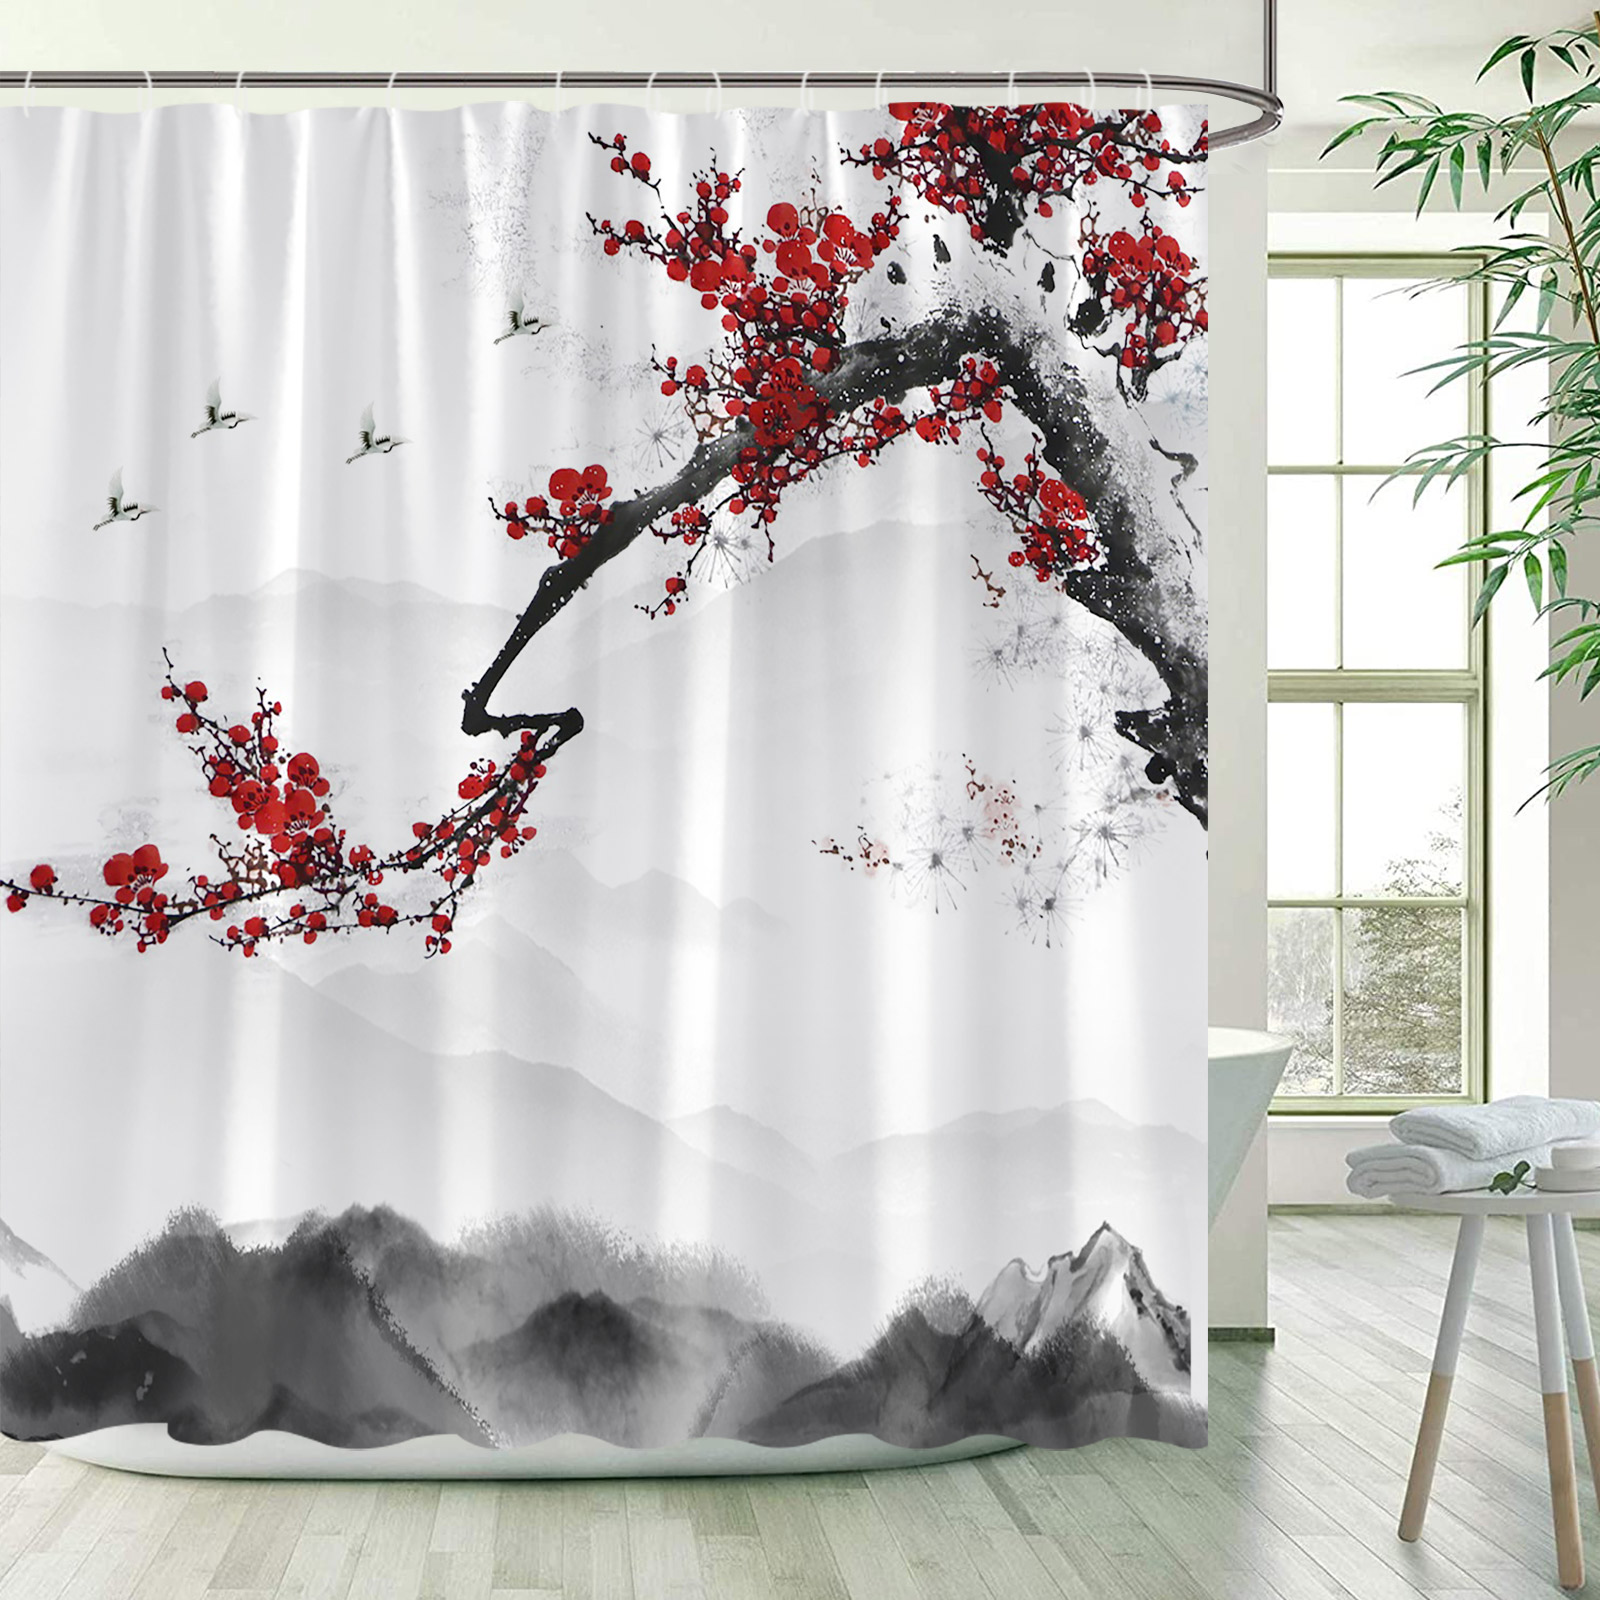 Coucons de douche à oiseaux de fleurs Bambou Green Bamboo Red Floral Mountain Ink Landscape Bath rideau Curtain Tissu de salle de bain Décor de salle de bain avec crochets